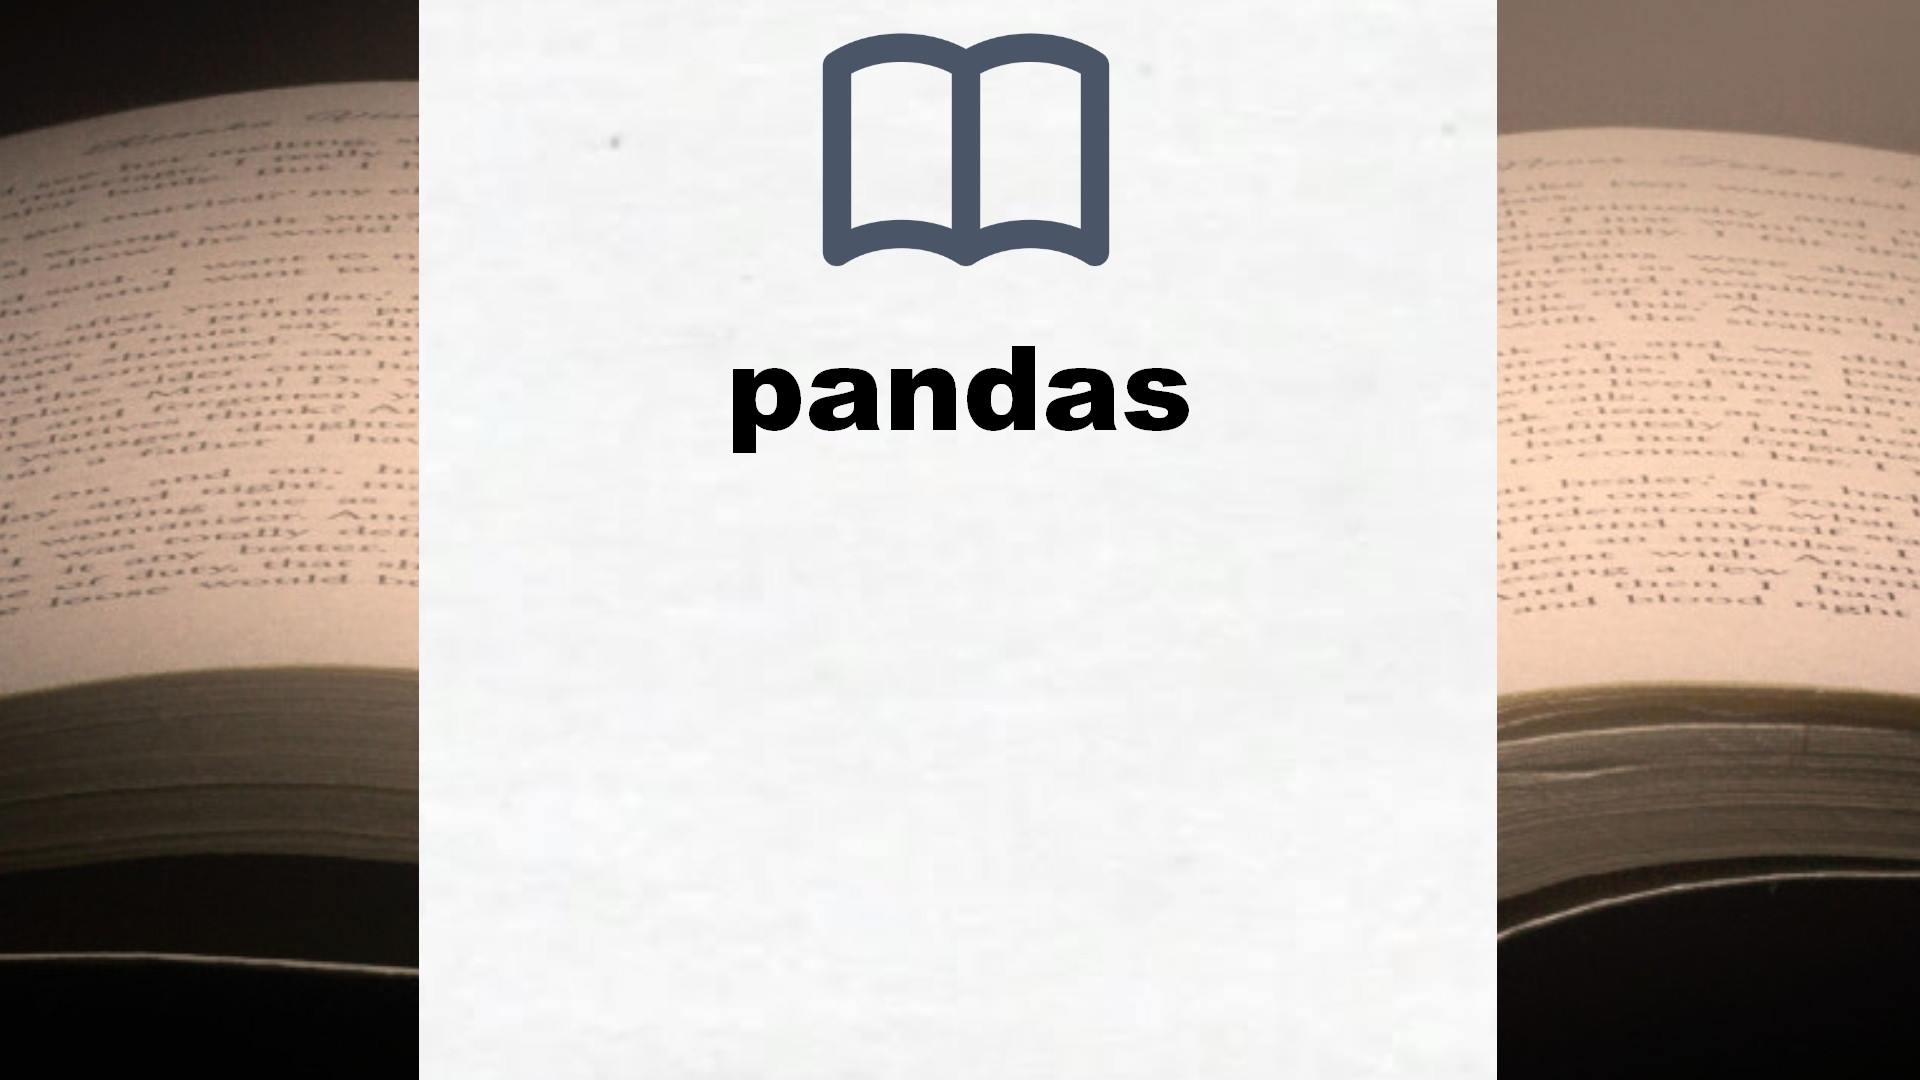 Libros sobre pandas